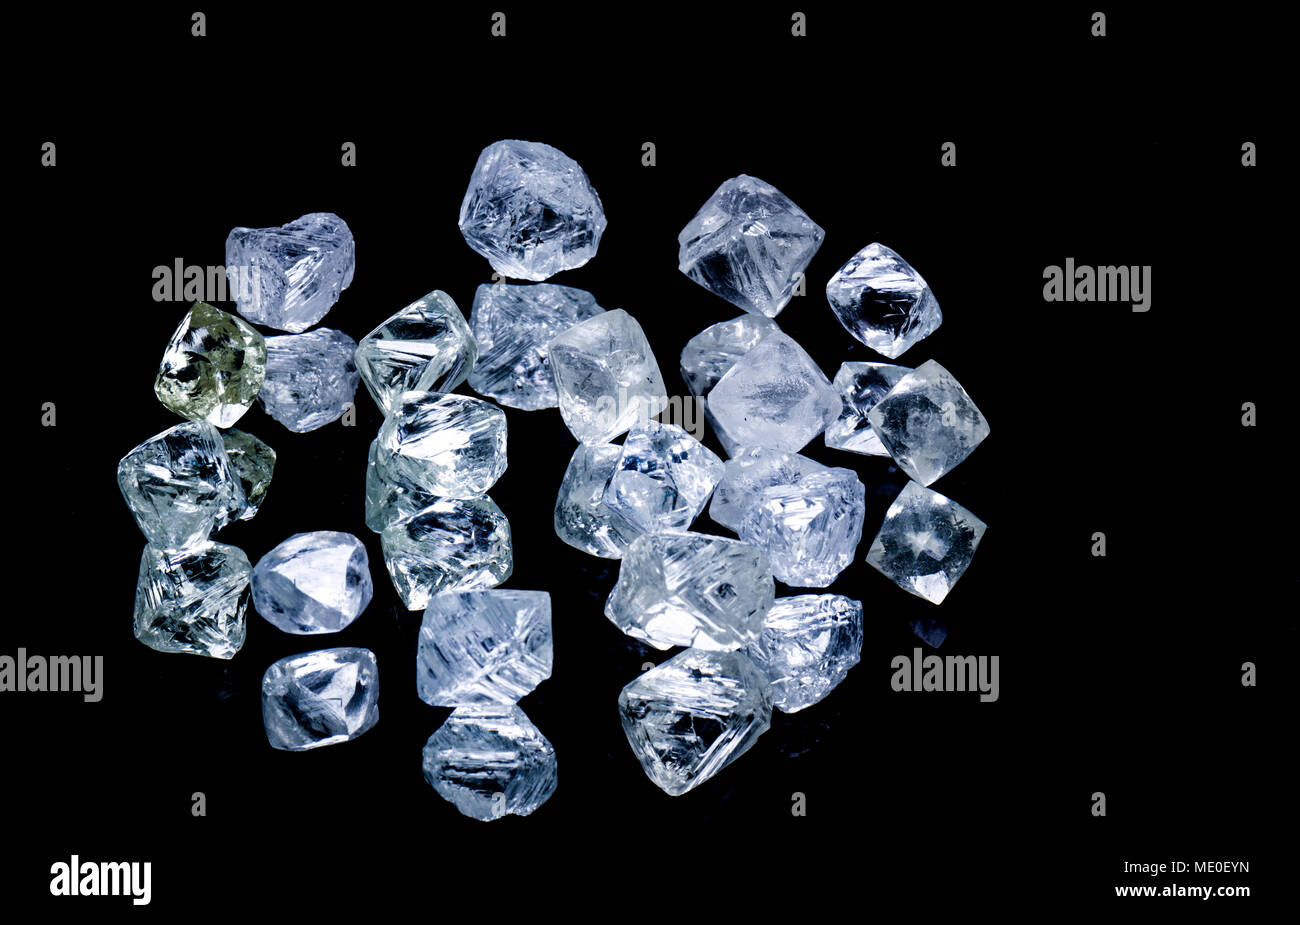 Raw diamonds isolated on black background. Stock Photo